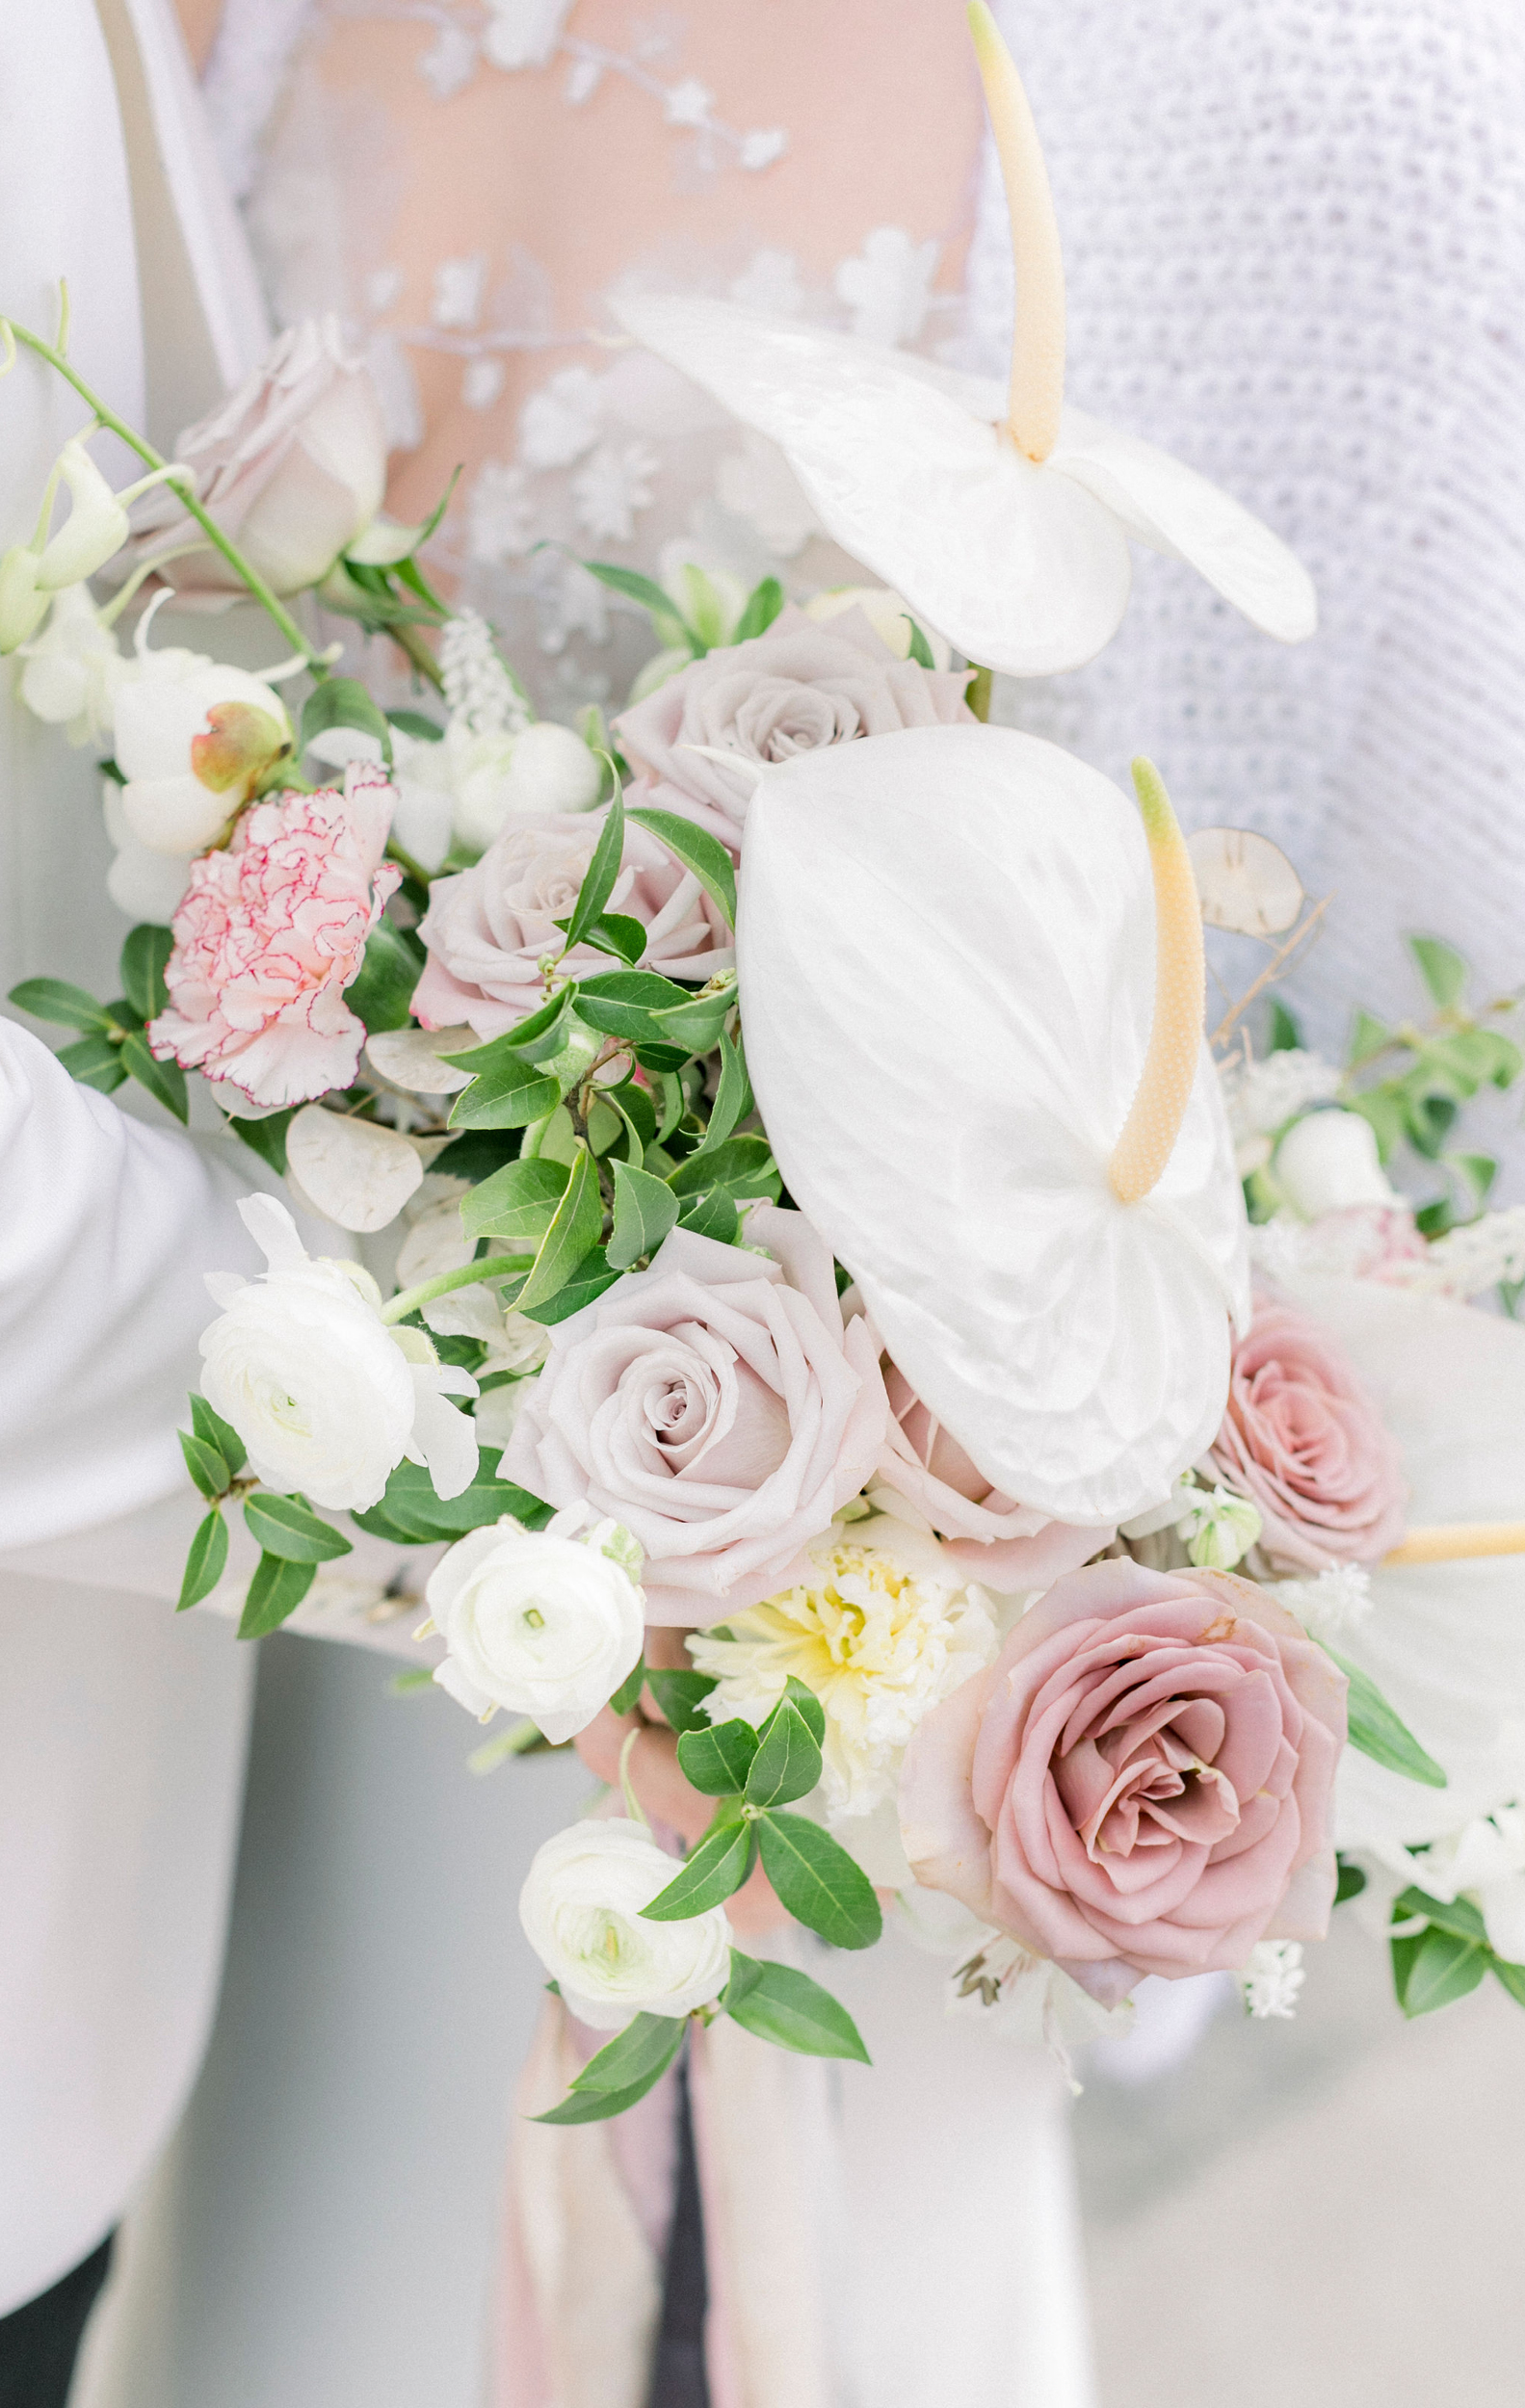 Shooting mariage éditorial à paris
fine art florals bouquet de mariée